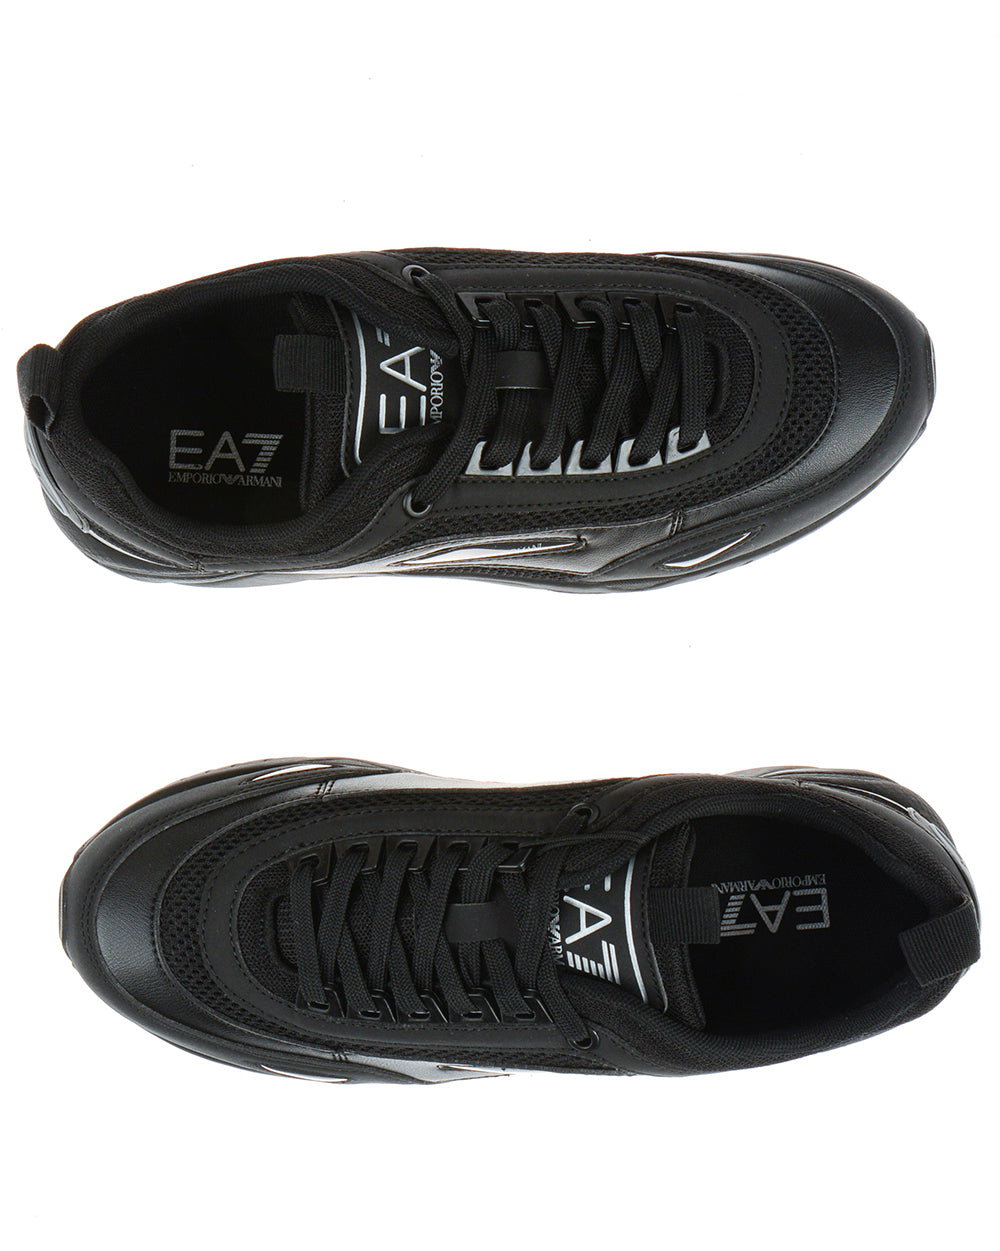 Scarpe Uomo EA7 Armani: Sneakers Eleganti - mem39